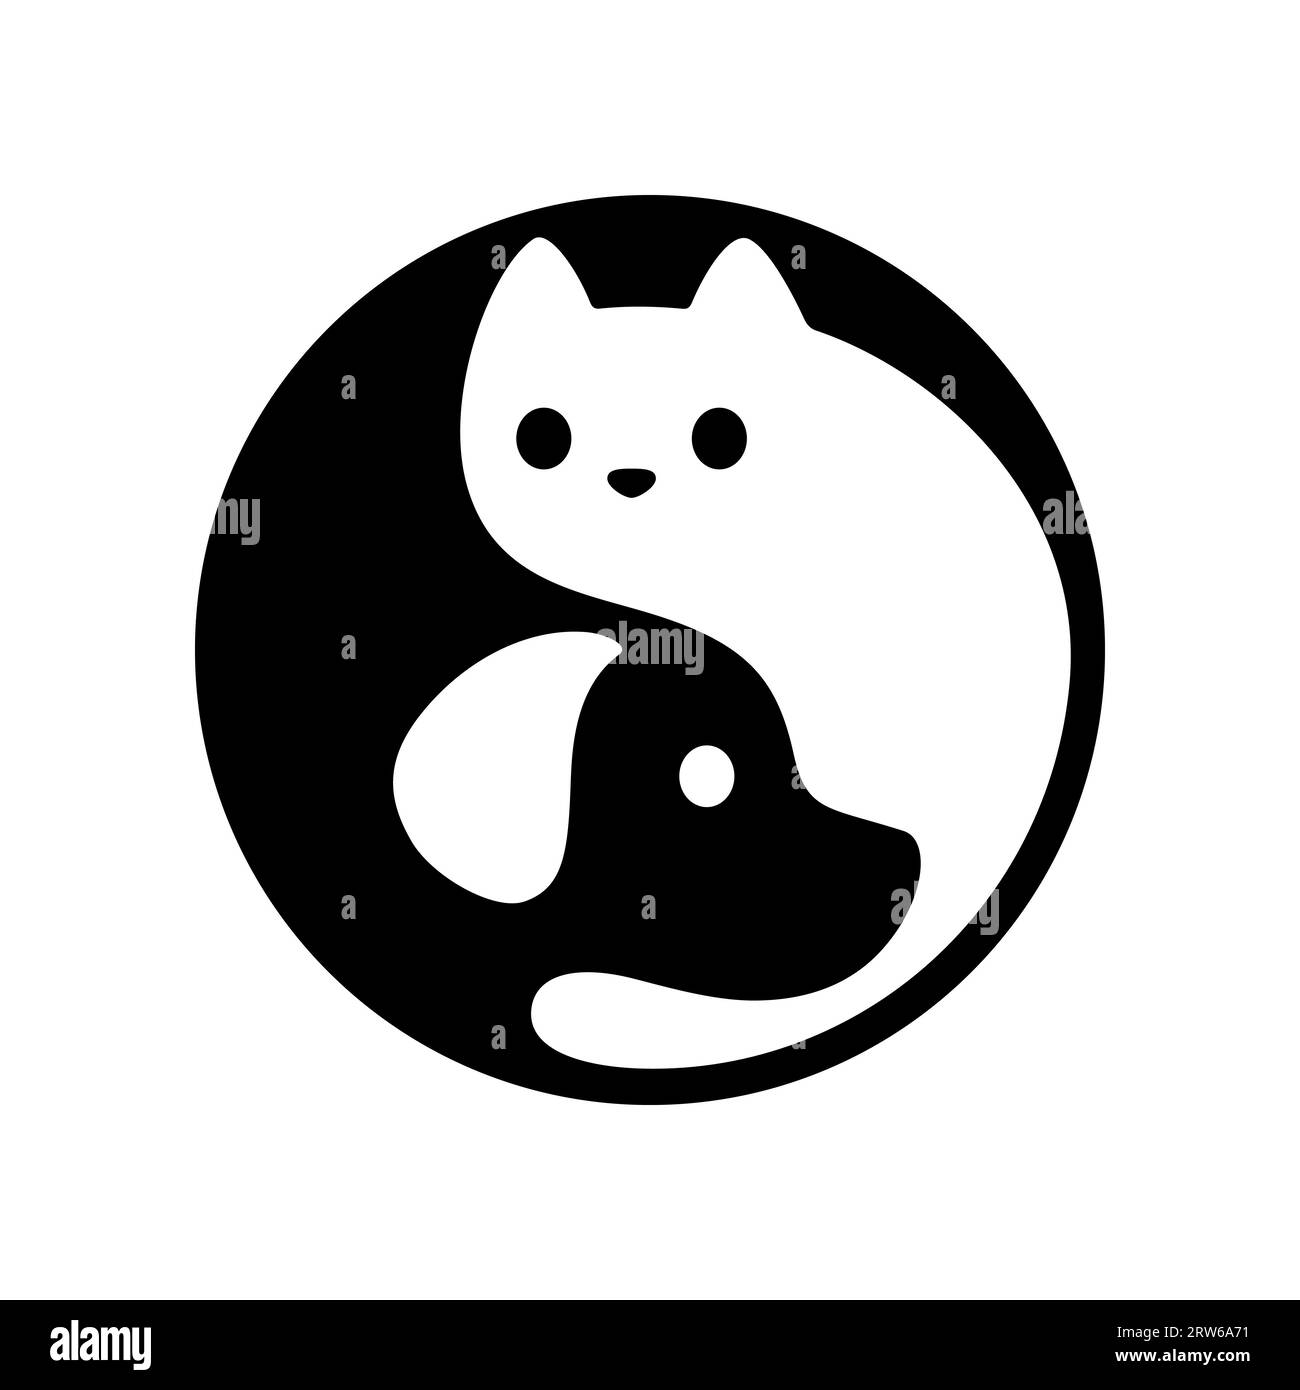 Yin Yang-Logo für Katze und Hund. Niedliche und einfache schwarz-weiße Cartoon-Haustiere in Kreisform. Minimale Vektordarstellung. Stock Vektor